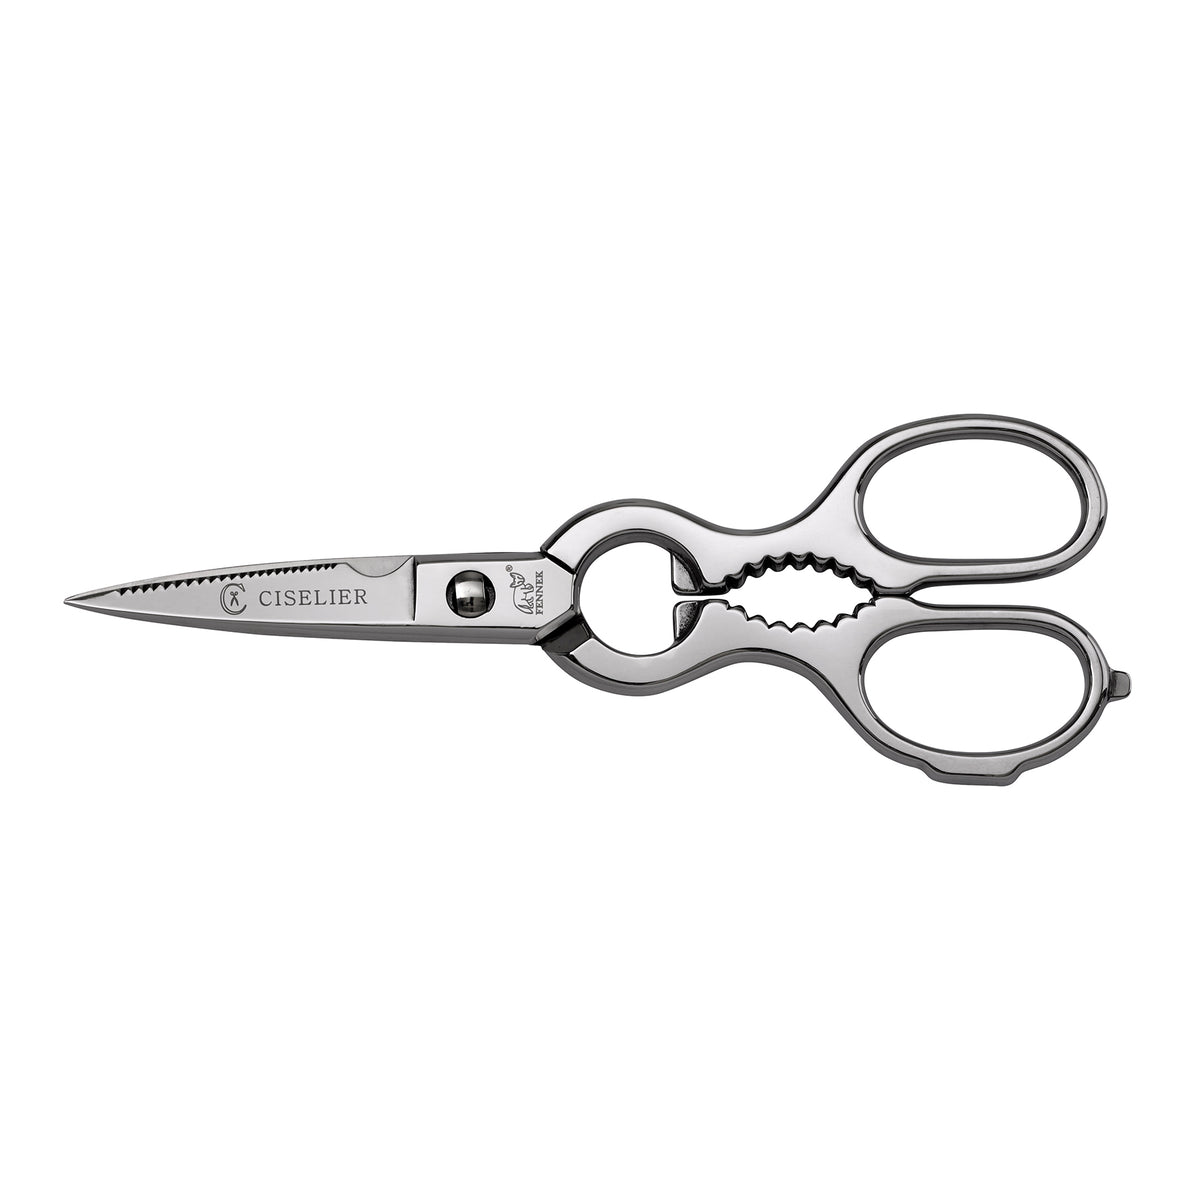 fennek kitchen scissors